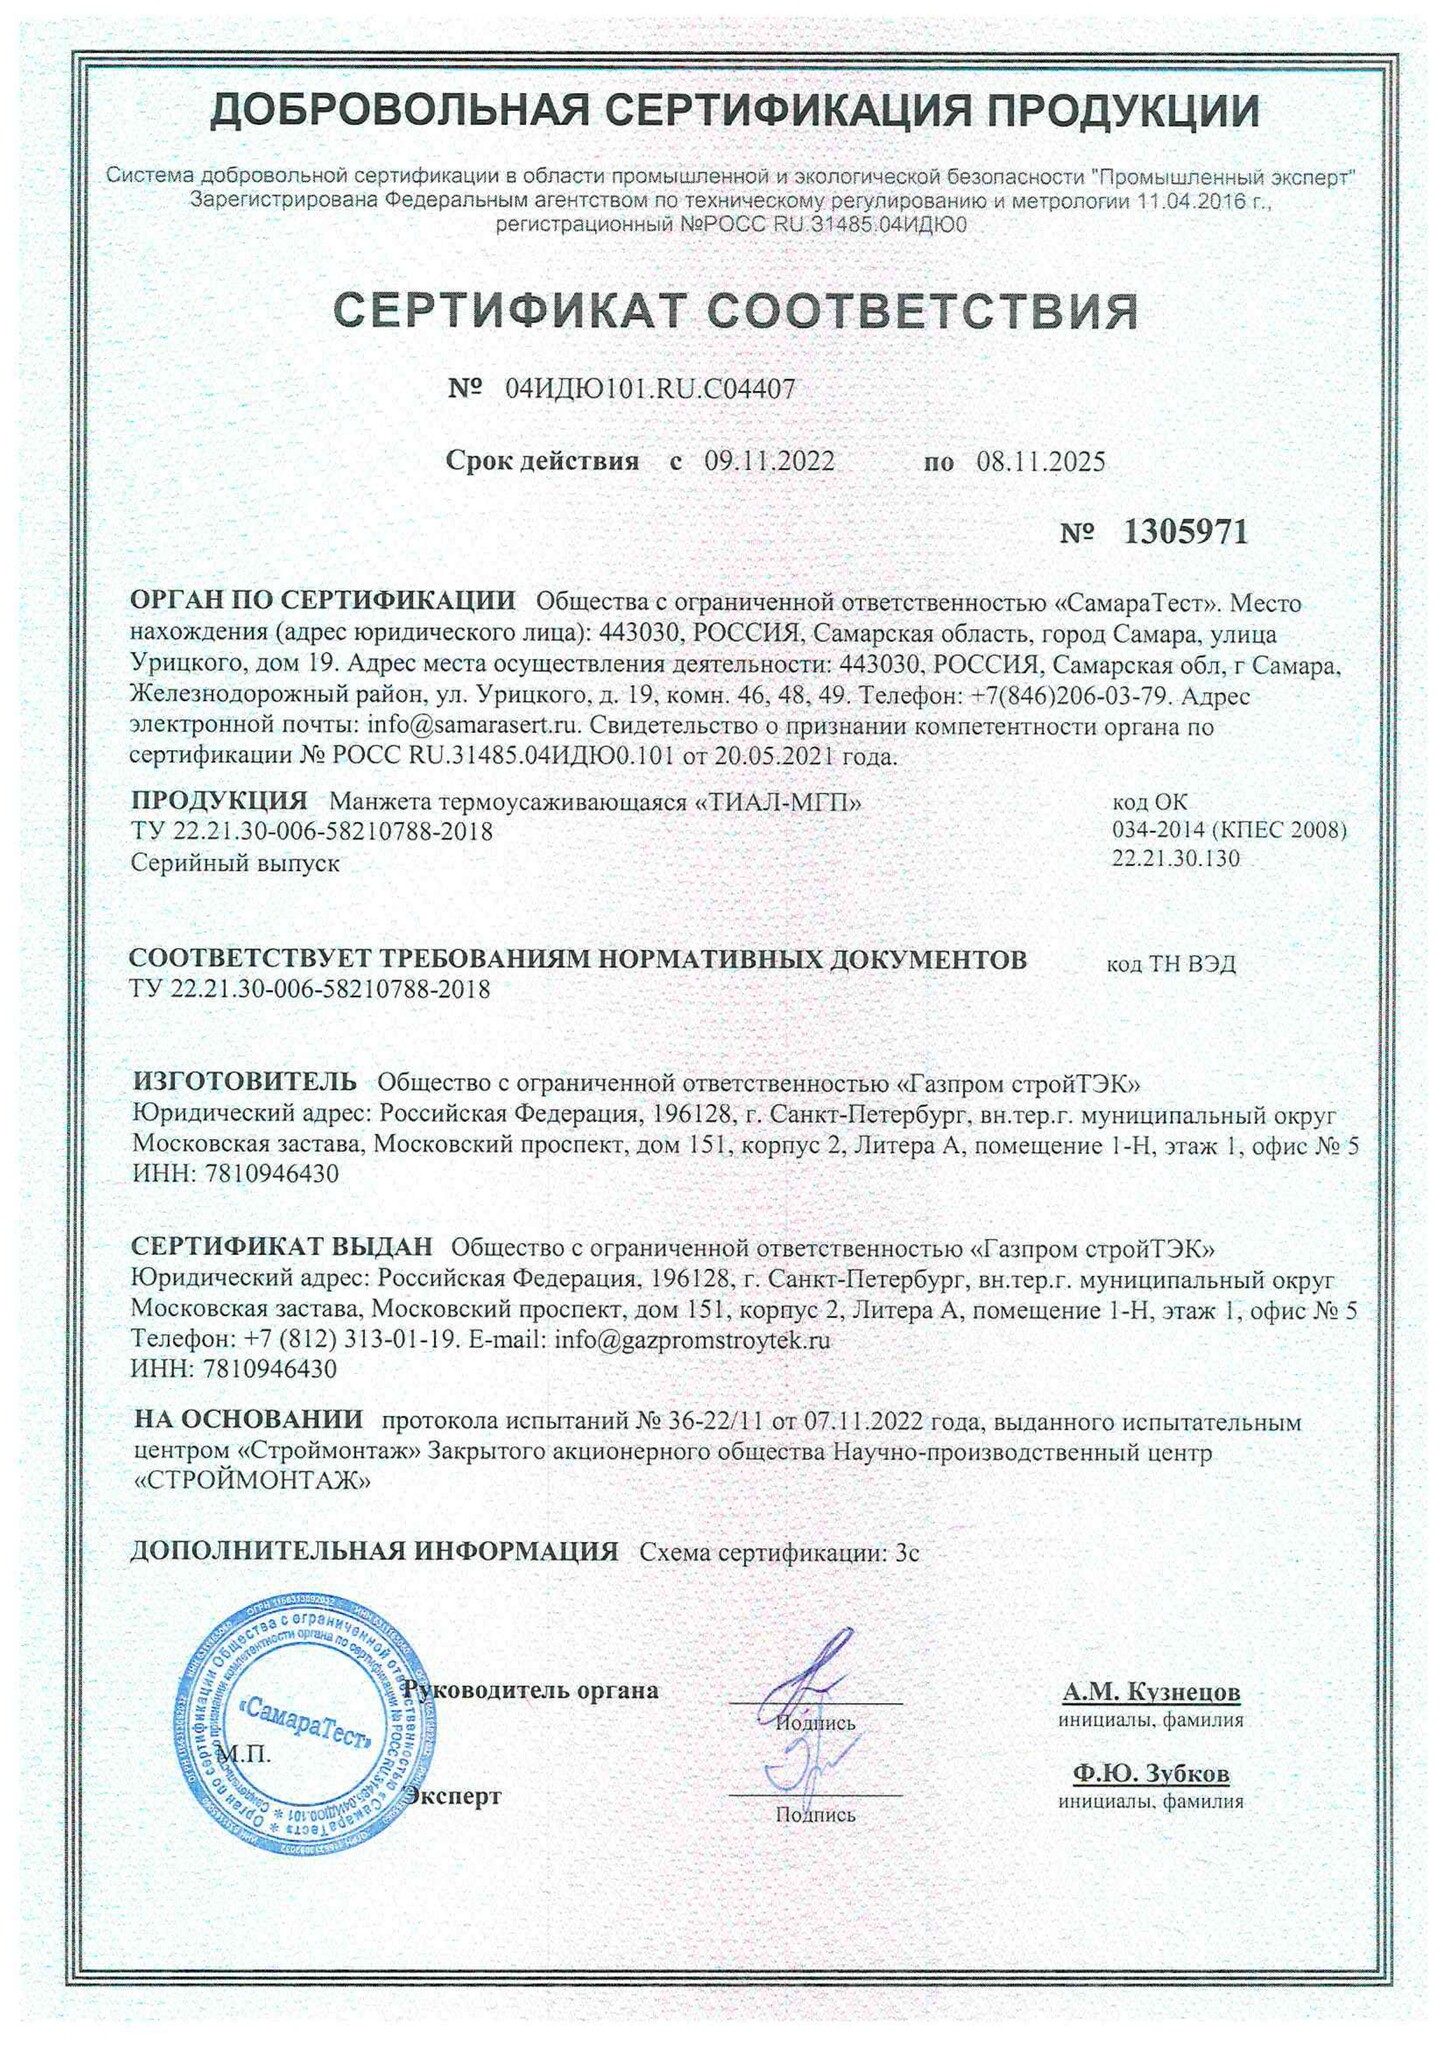 Сертификат ТИАЛ-МГП до 08.11.2025